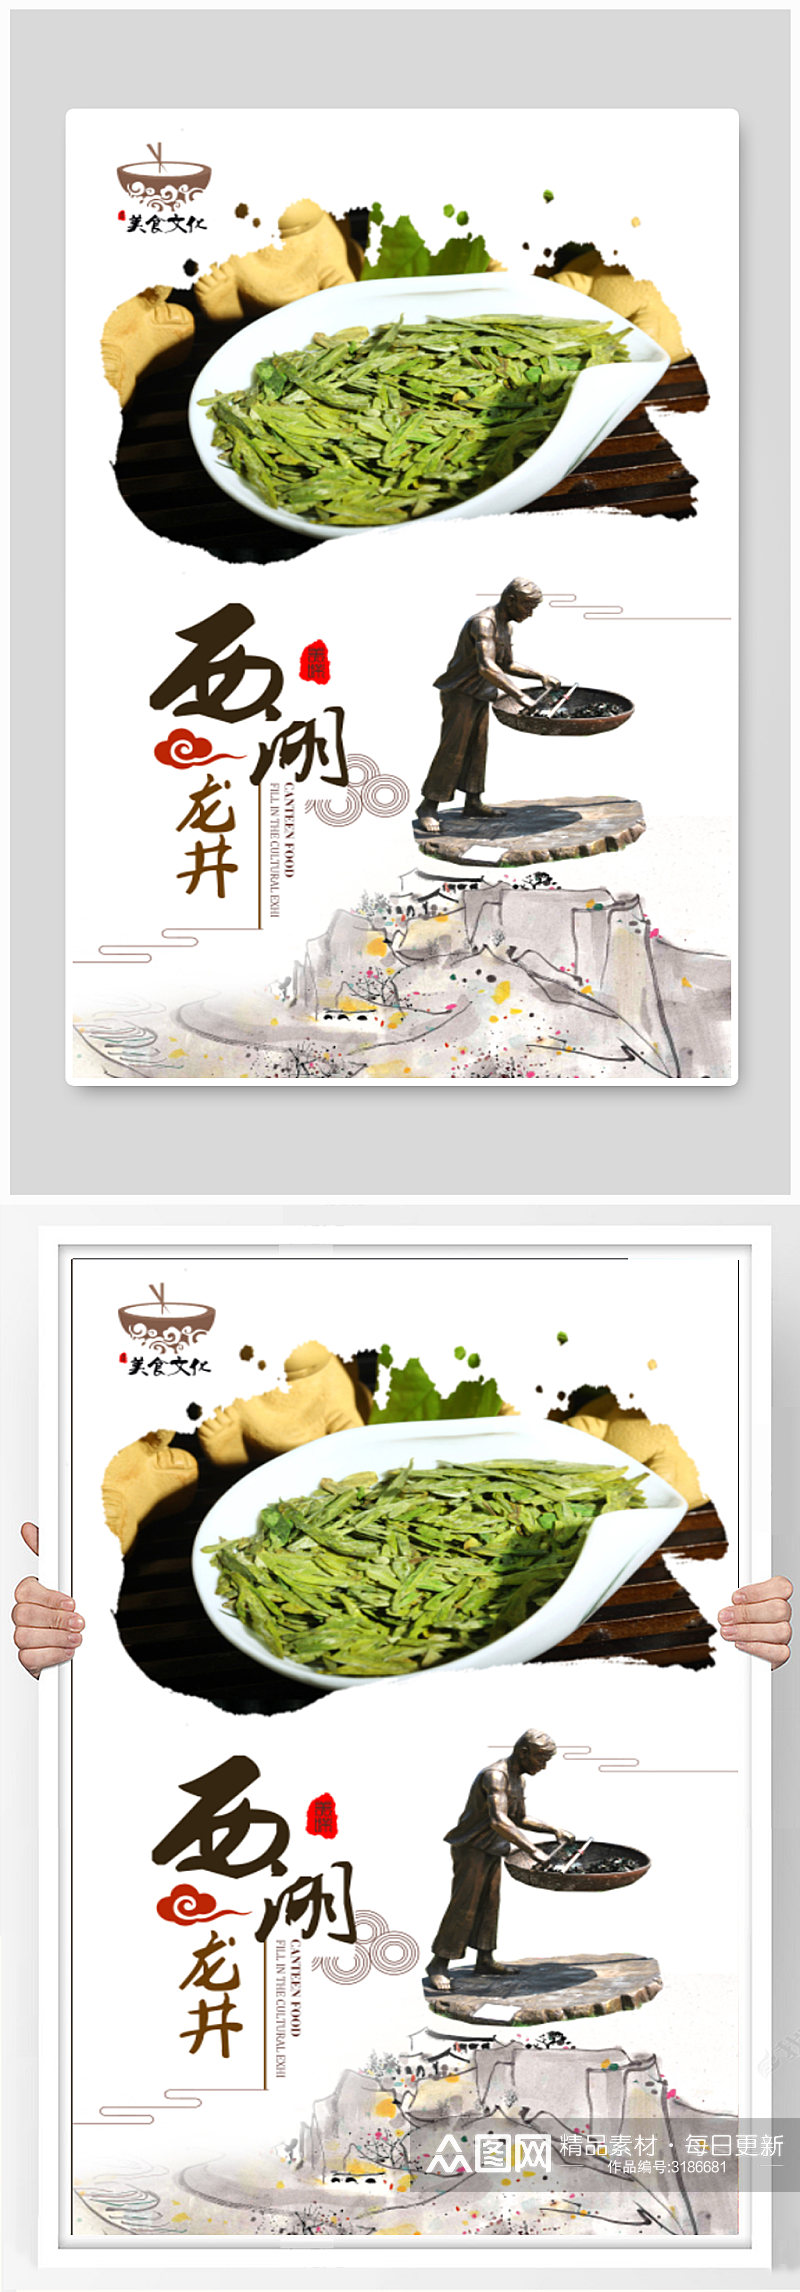 经典创意西湖龙井茶文化海报宣传设计素材